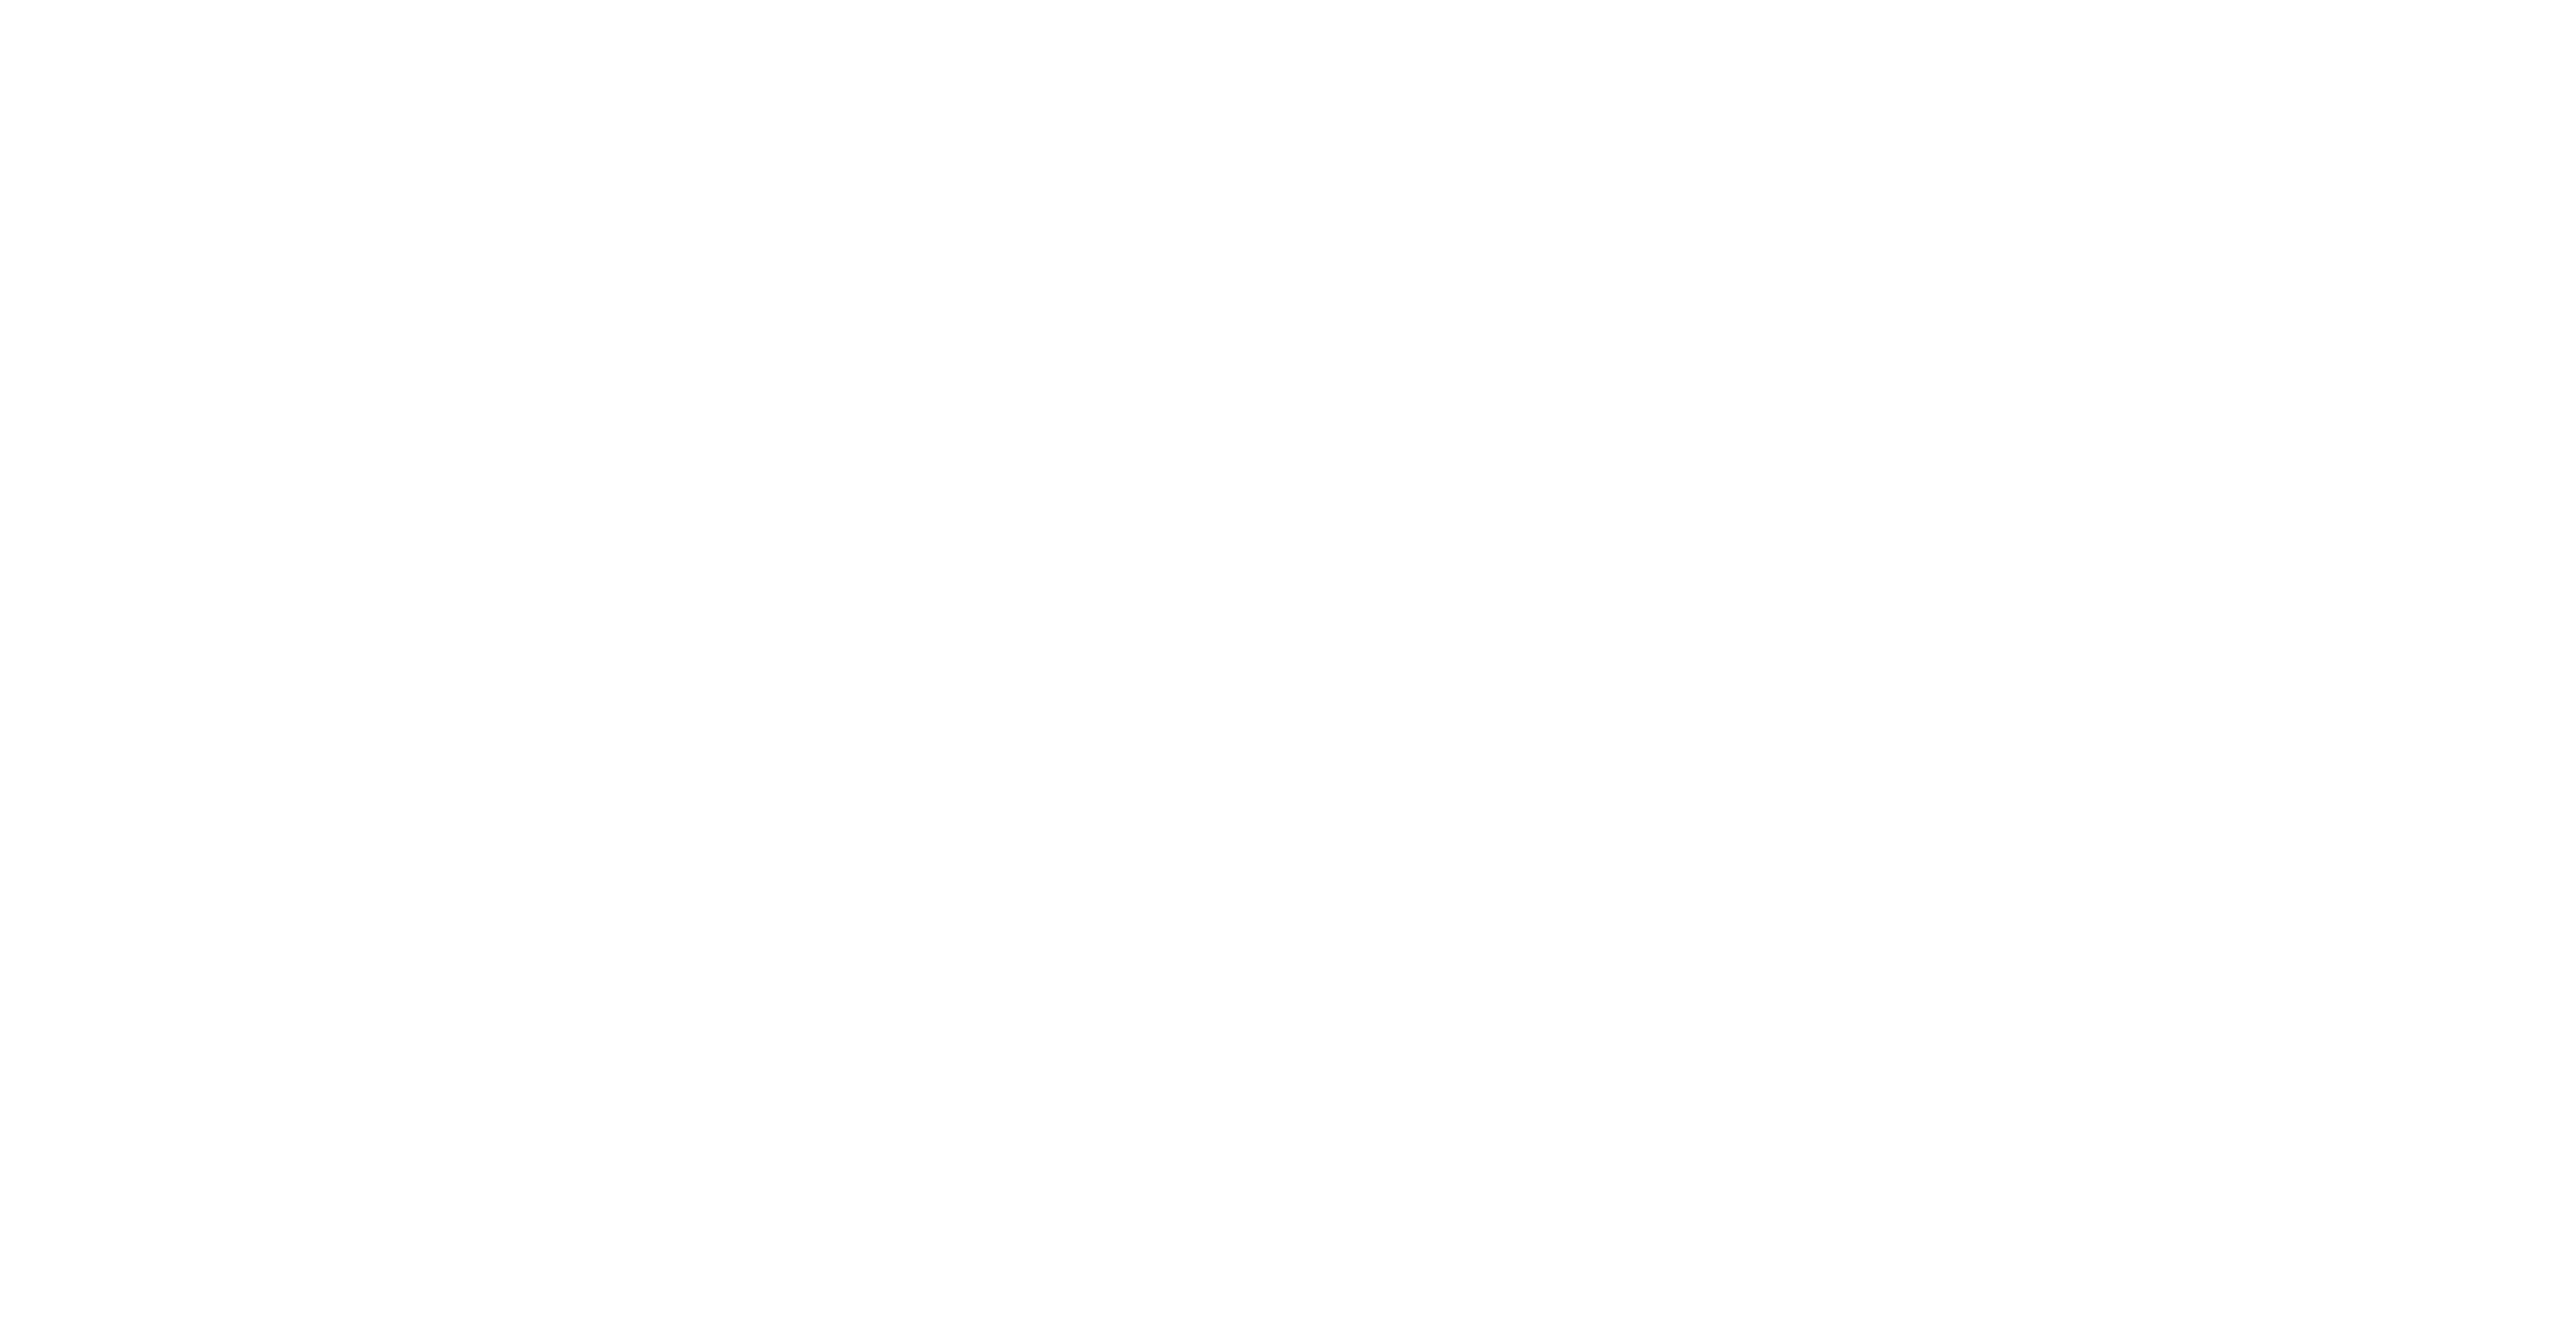 icph logo white